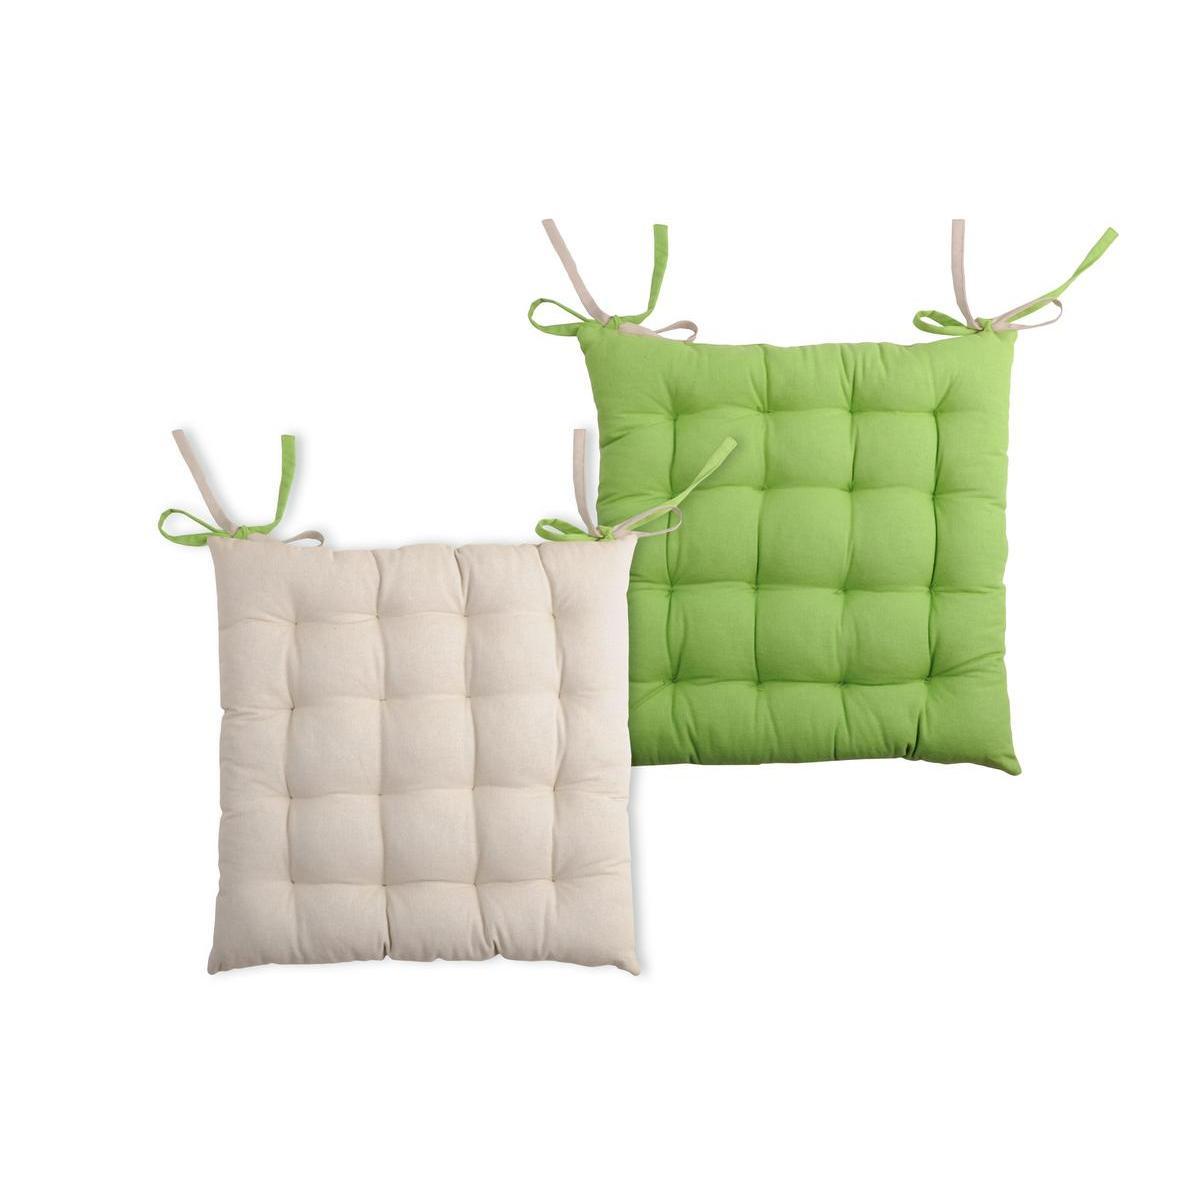 2 galettes de chaise 16 points - 100 % coton - 40 x 40 cm - Beige et vert